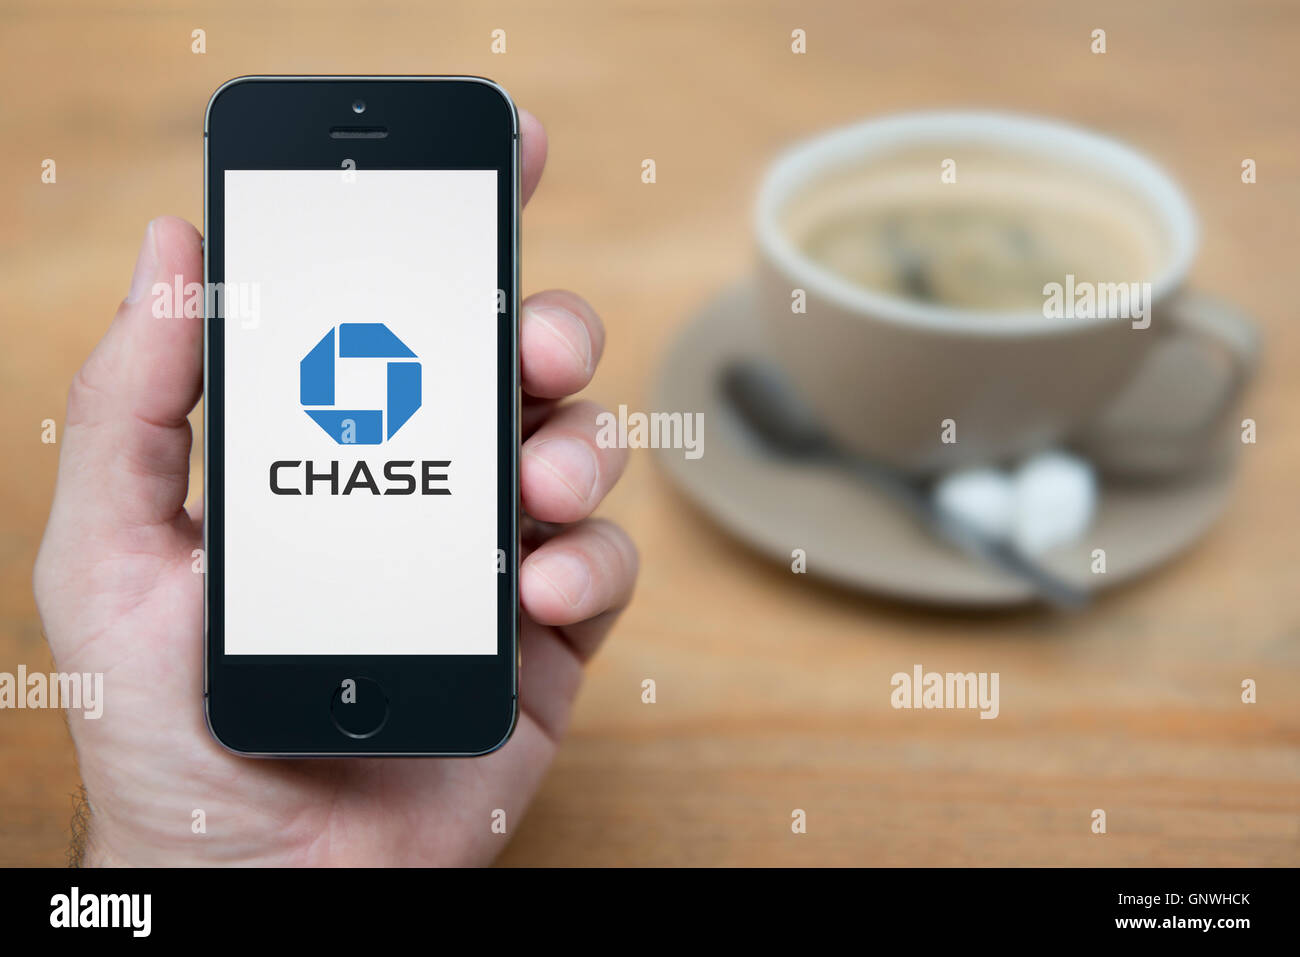 Un uomo guarda al suo iPhone che visualizza la Chase Bank logo, mentre sat con una tazza di caffè (solo uso editoriale). Foto Stock